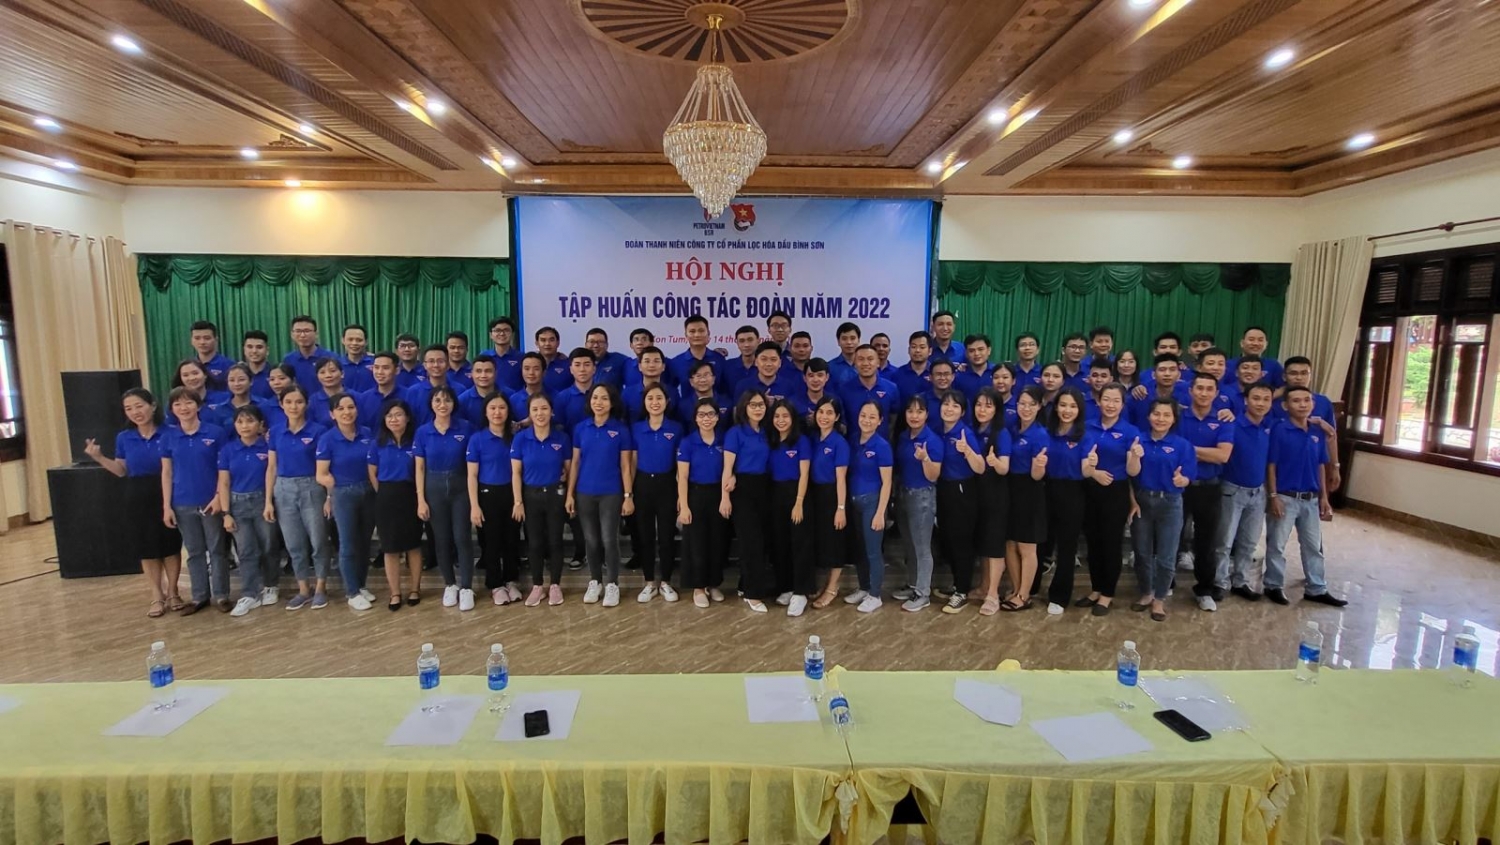 Đoàn Thanh niên BSR tổ chức Hội nghị tập huấn công tác Đoàn năm 2022